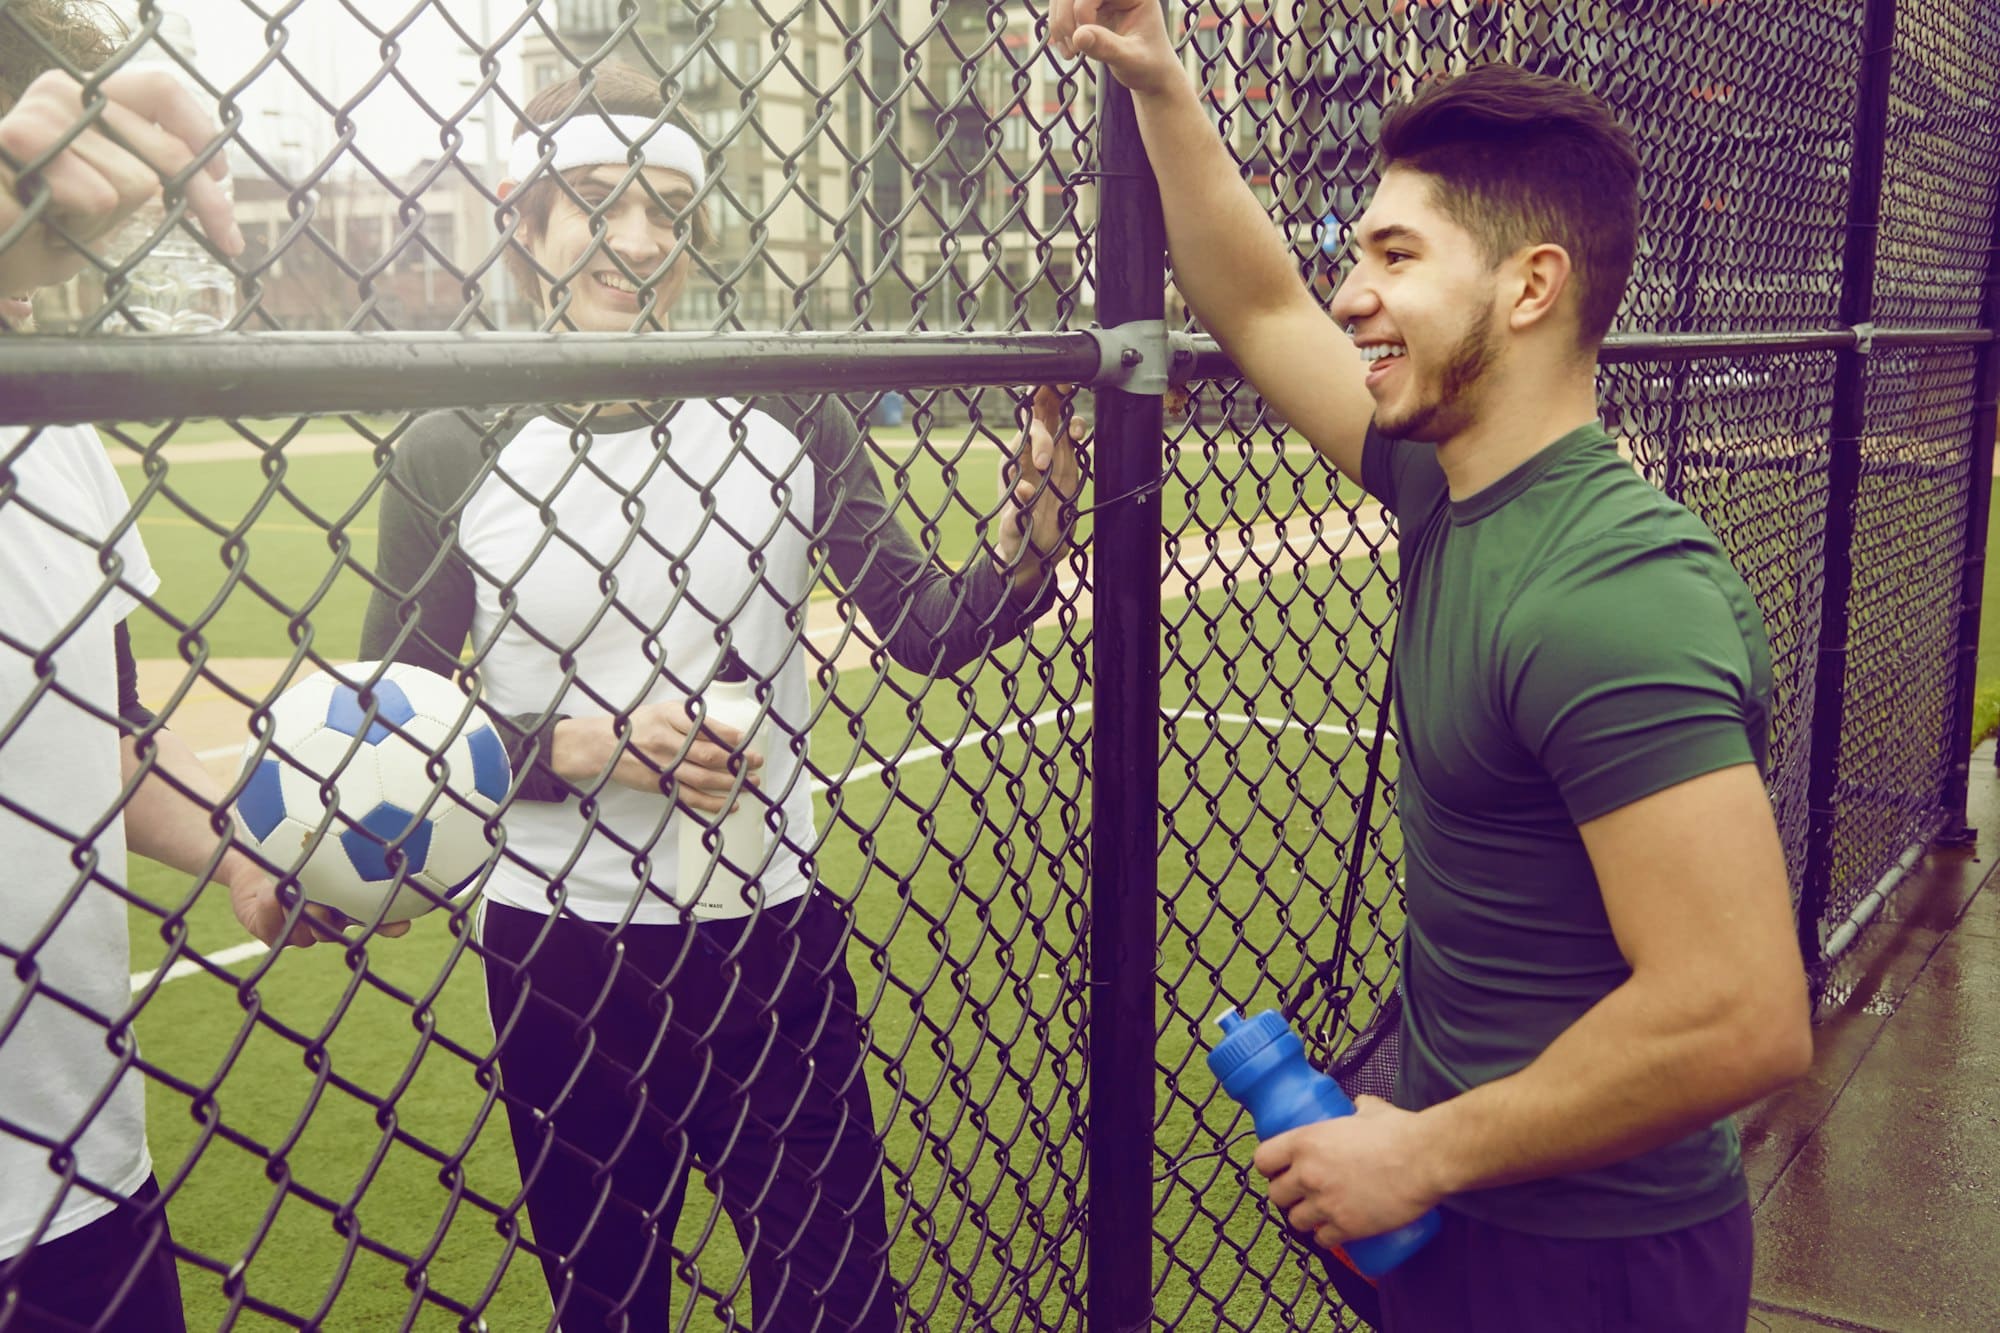 Трое футболистов-мужчин разговаривают через проволочный забор